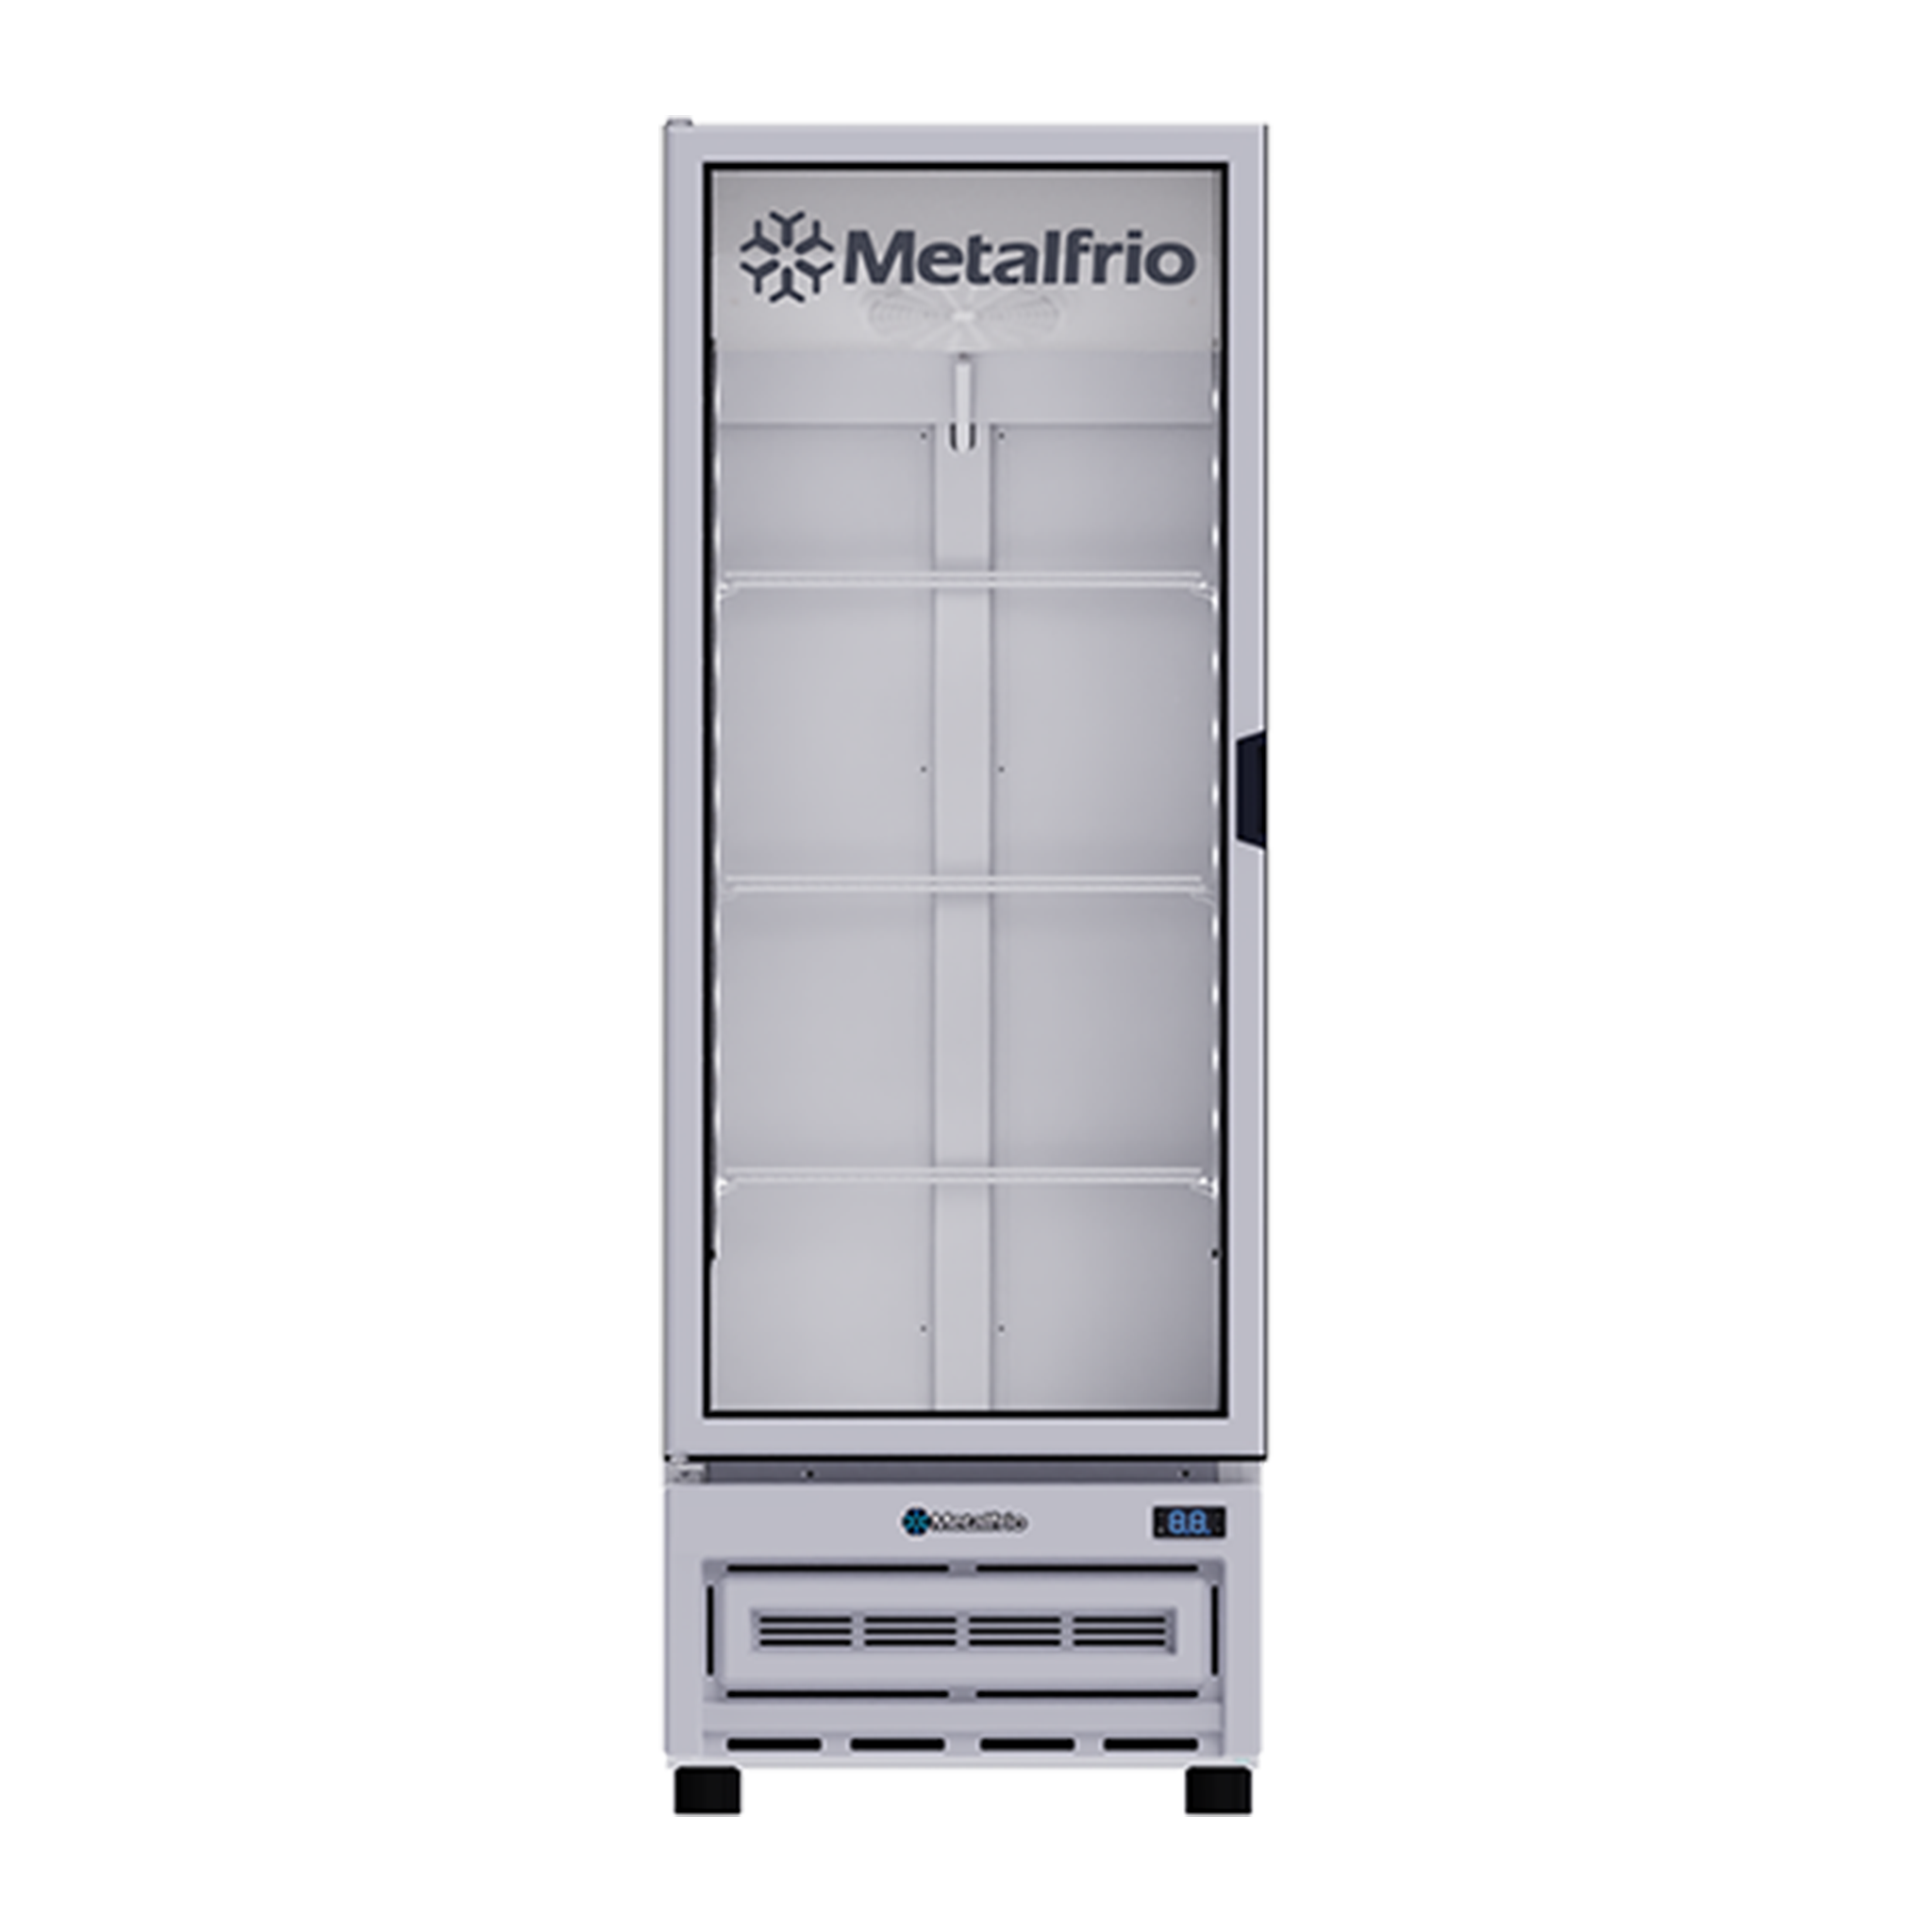 METALFRIO RB270 Refrigerador Vertical 340 lts.